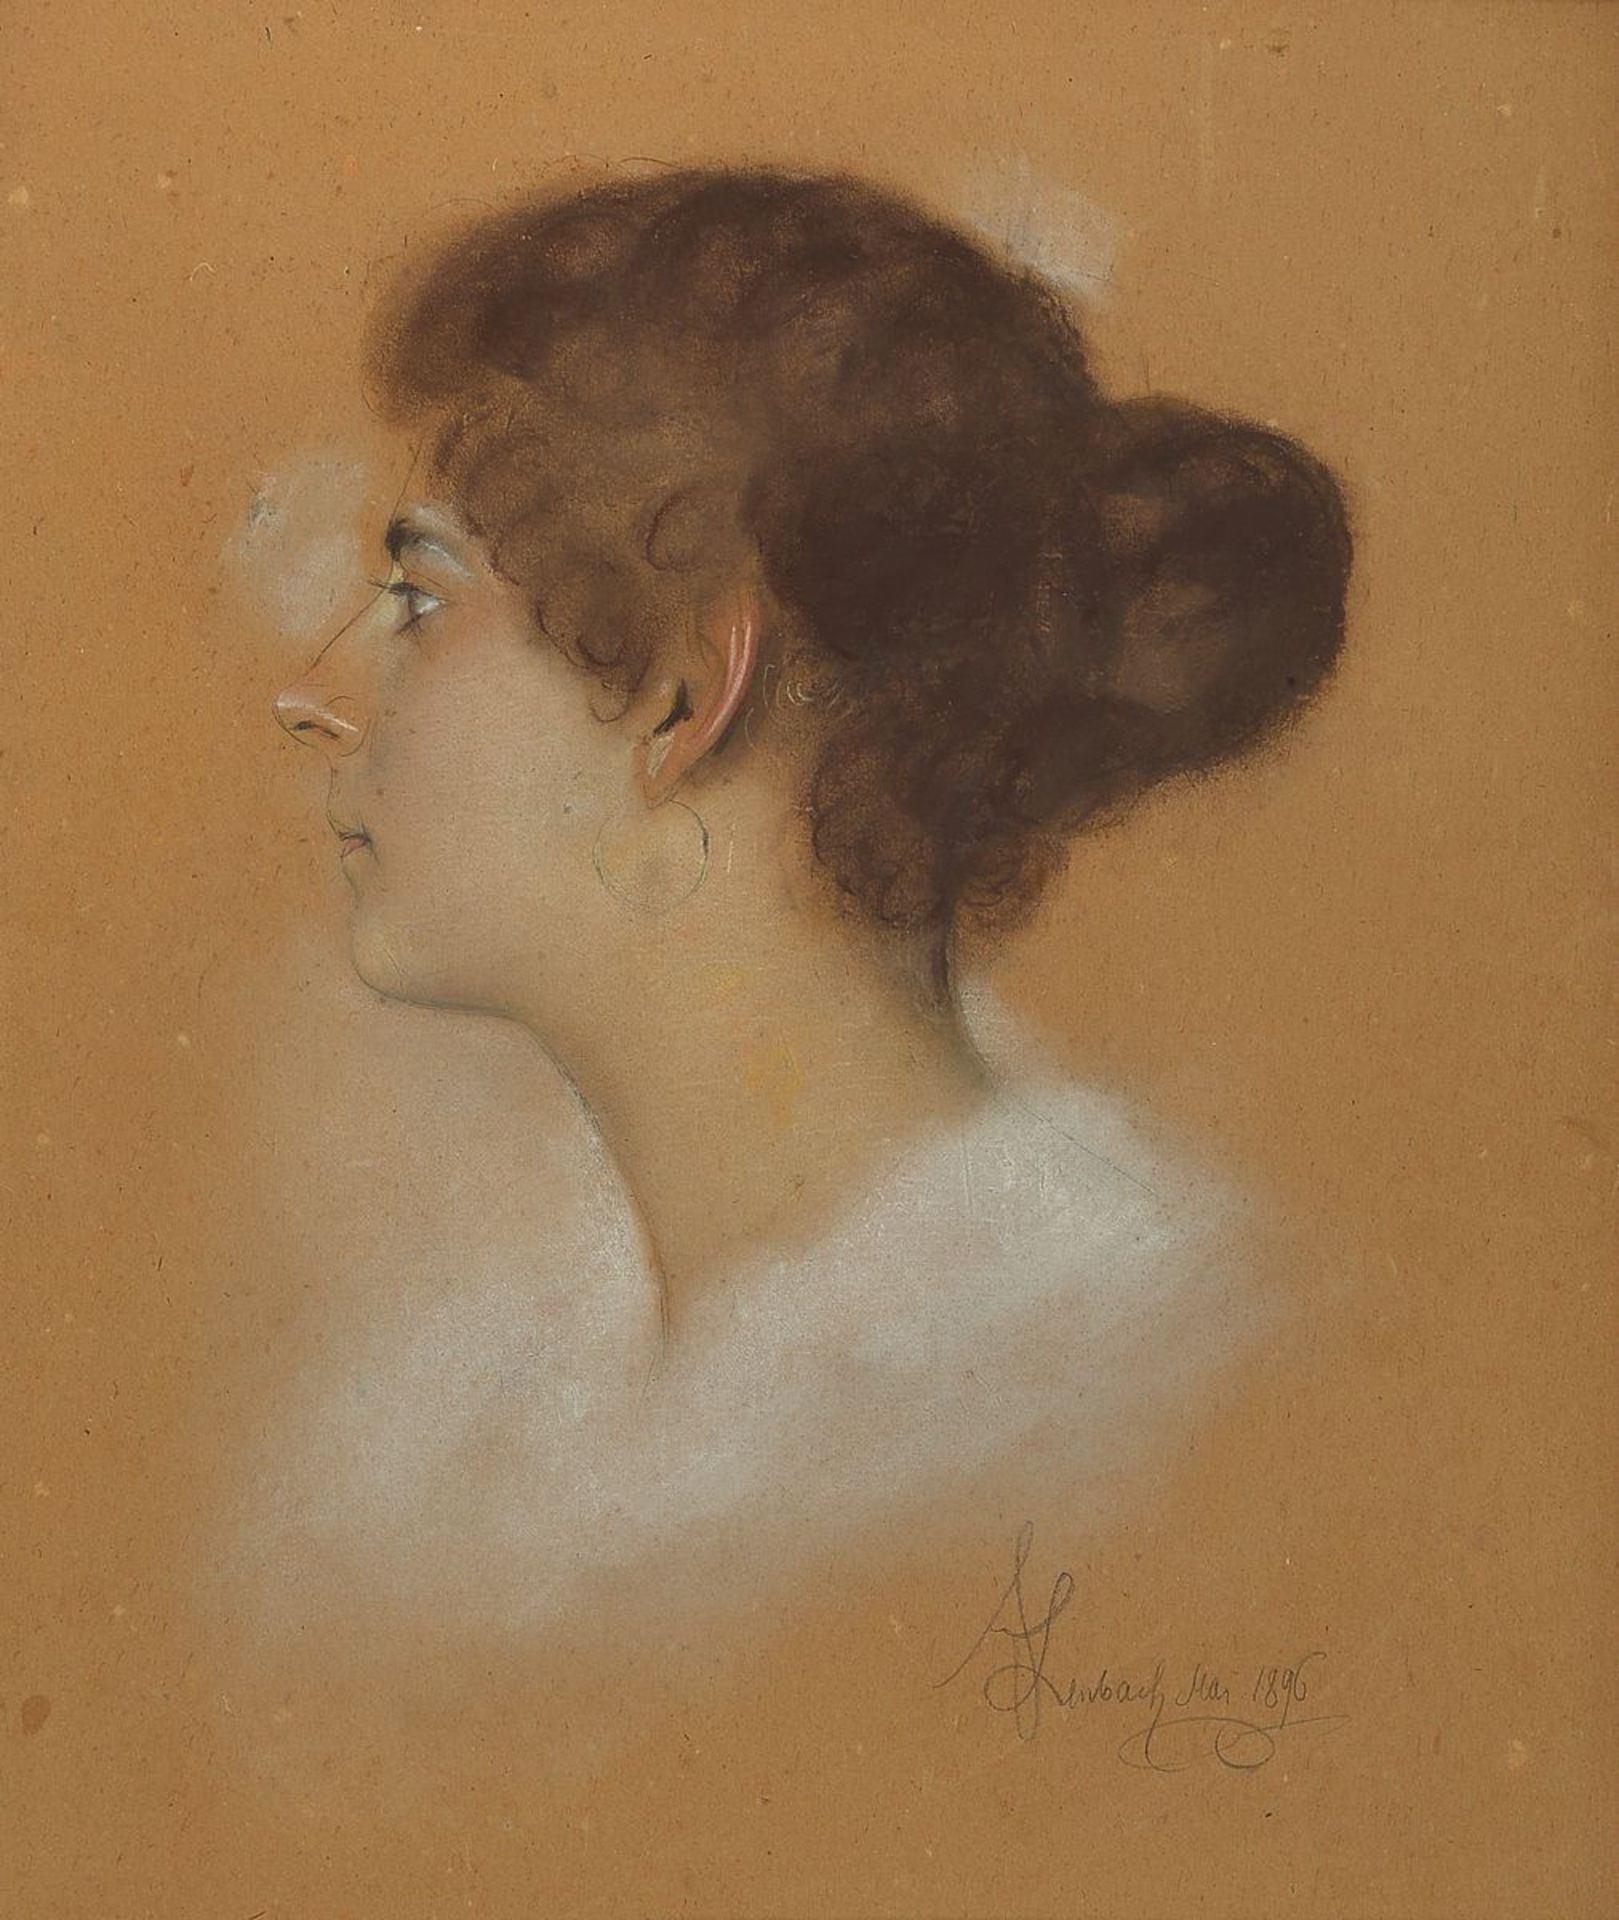 Franz Seraph von Lenbach, 1836-1904, Profilporträt einer jungen Frau, aquarellierte Zeichnung auf